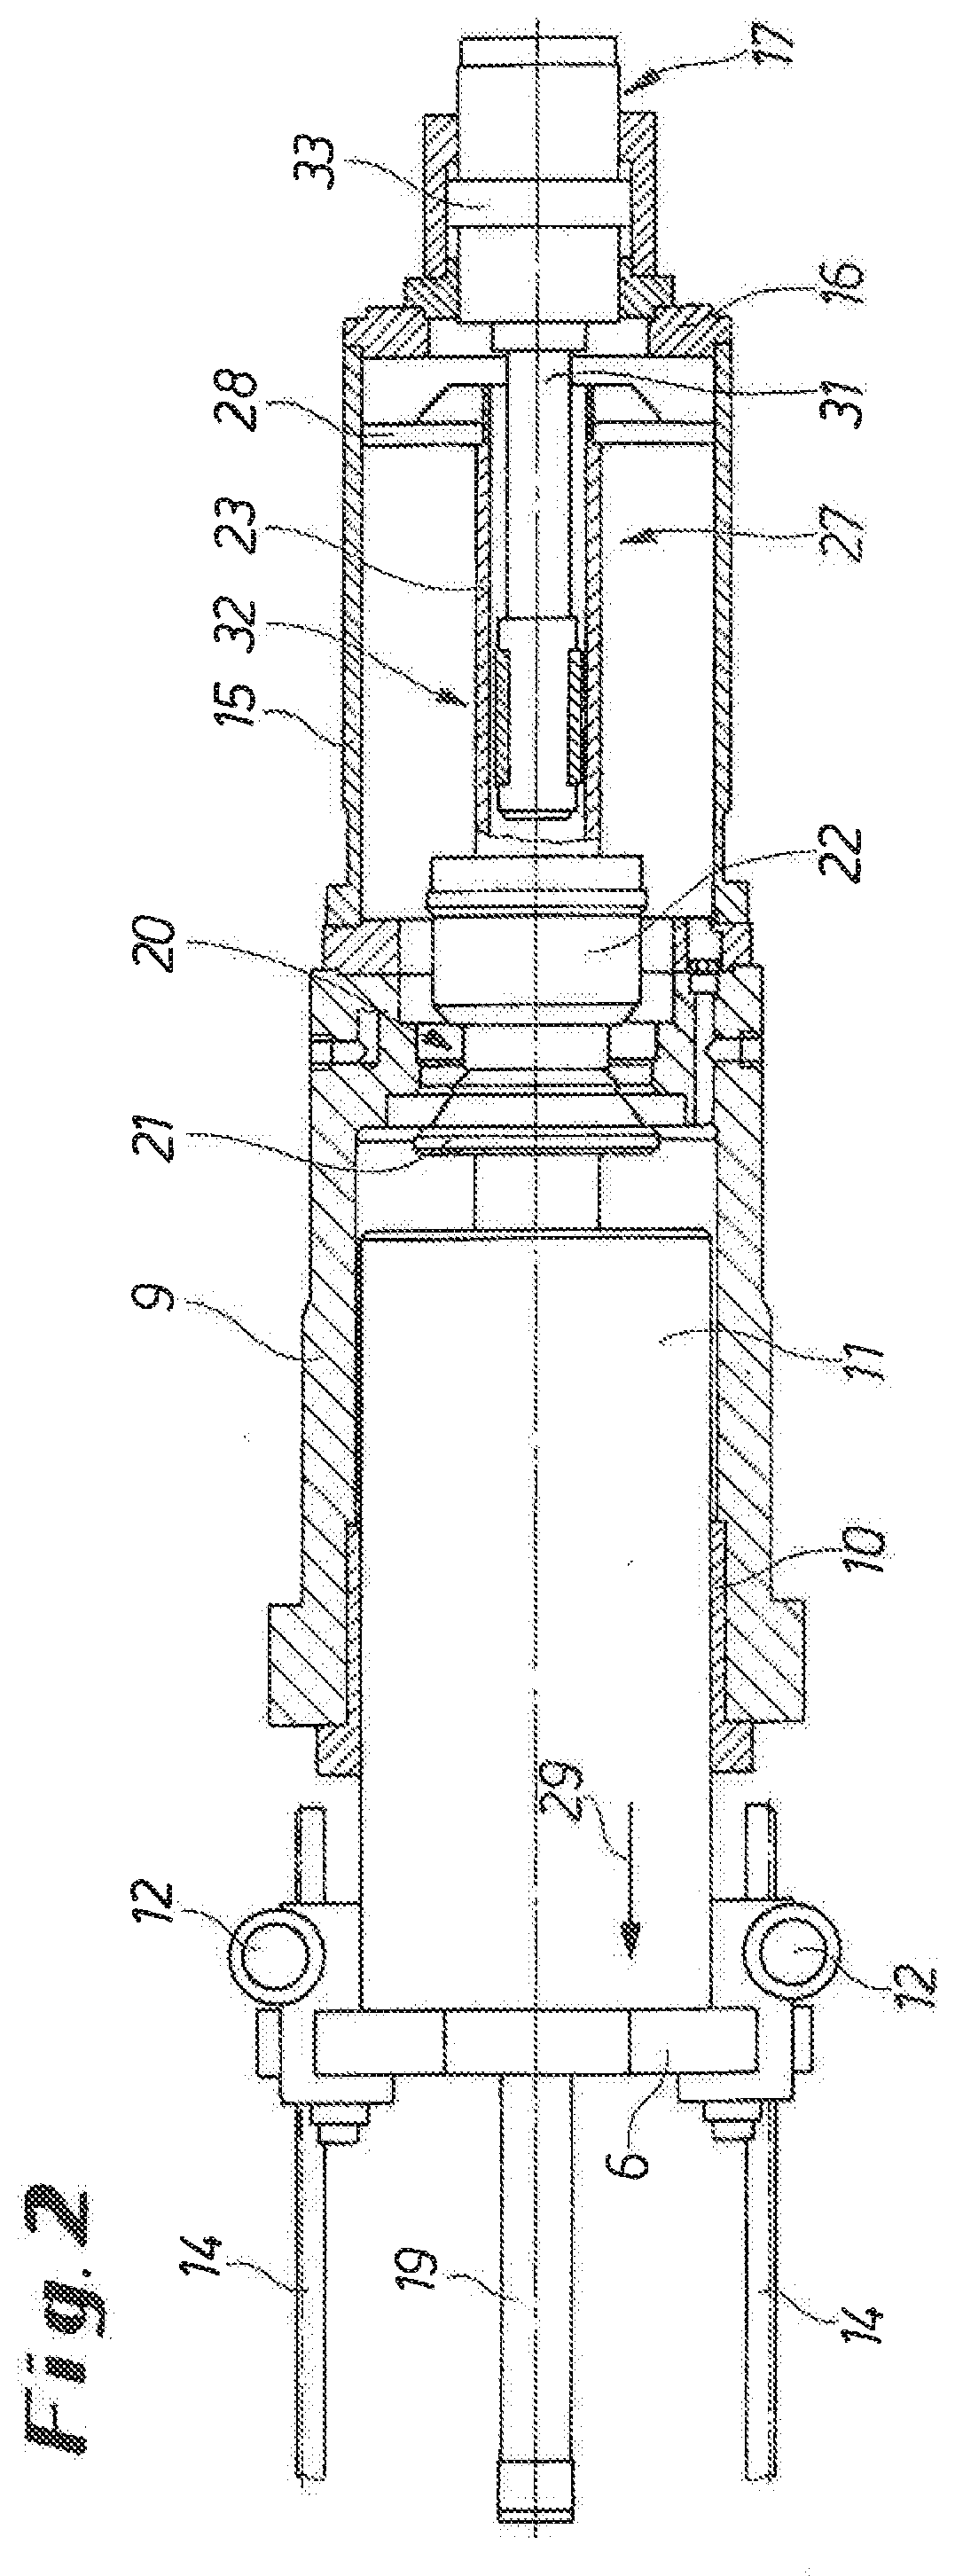 Bar press with hydraulic drive